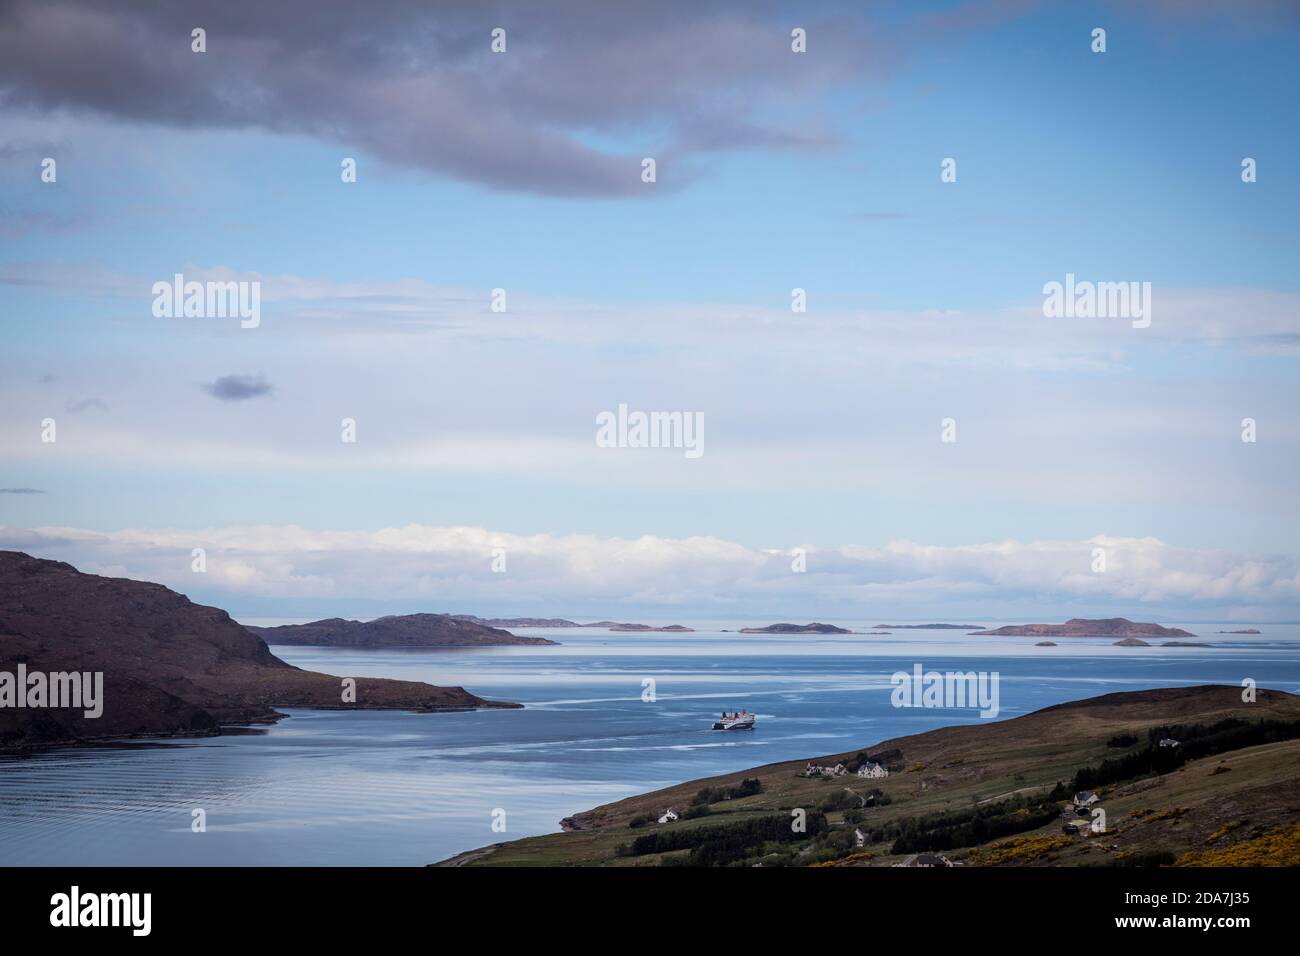 Vista del ferry Caledonian MacBrayne (CalMac) mientras se dirige hacia las Islas de Verano, visto desde las colinas por encima de Ullapool, Escocia. Foto de stock